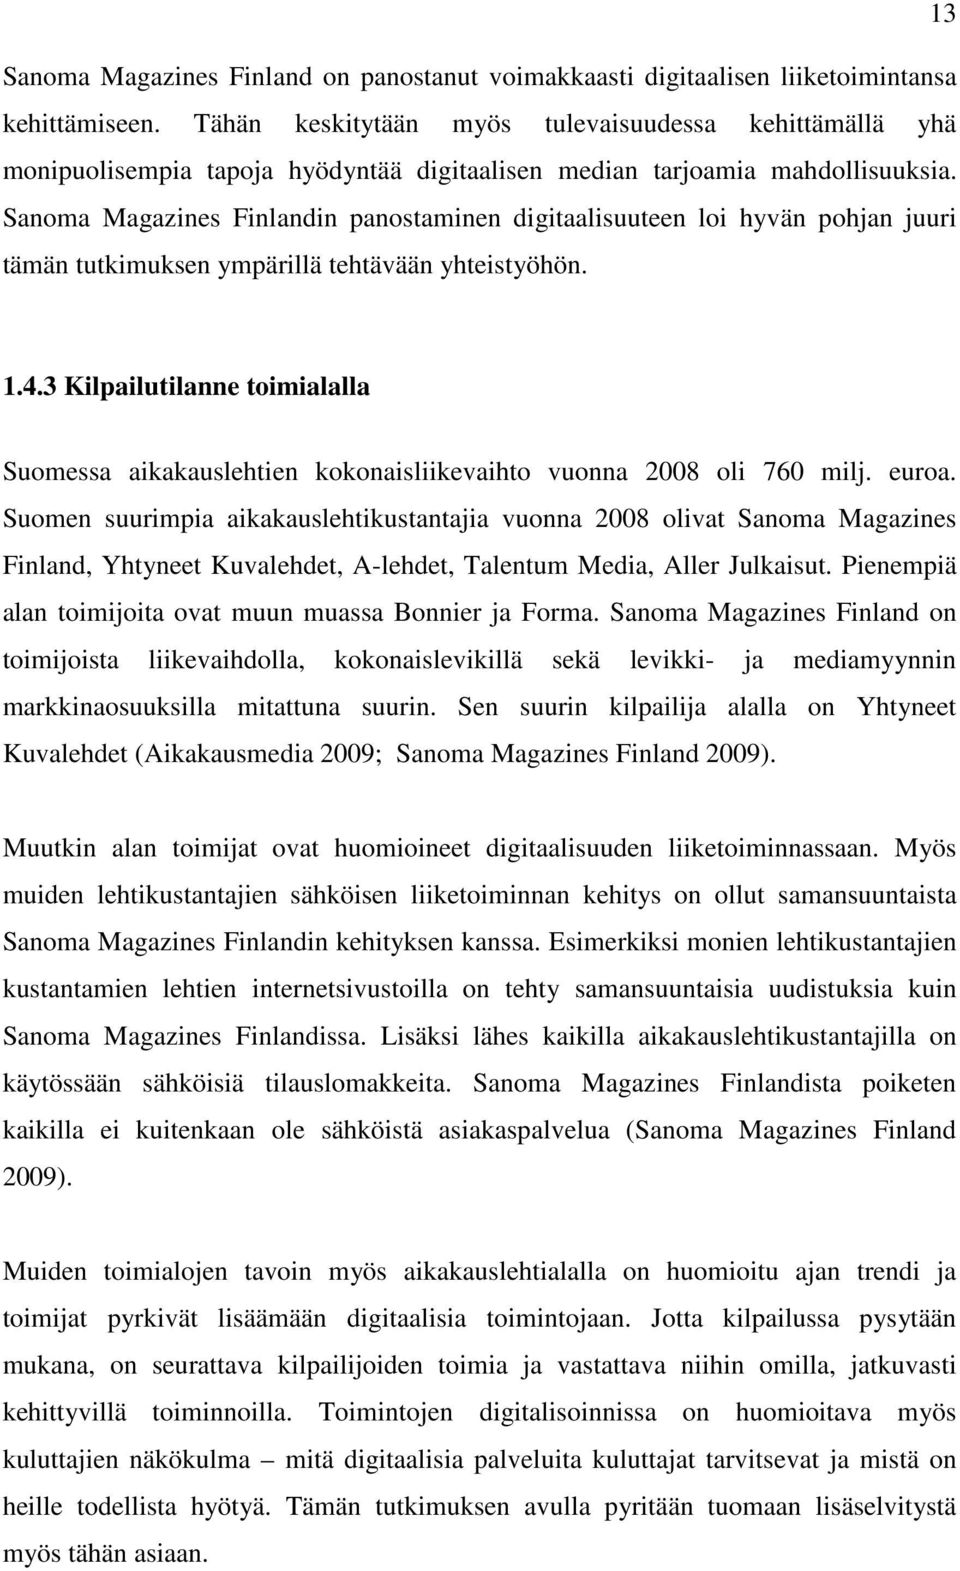 Sanoma Magazines Finlandin panostaminen digitaalisuuteen loi hyvän pohjan juuri tämän tutkimuksen ympärillä tehtävään yhteistyöhön. 1.4.